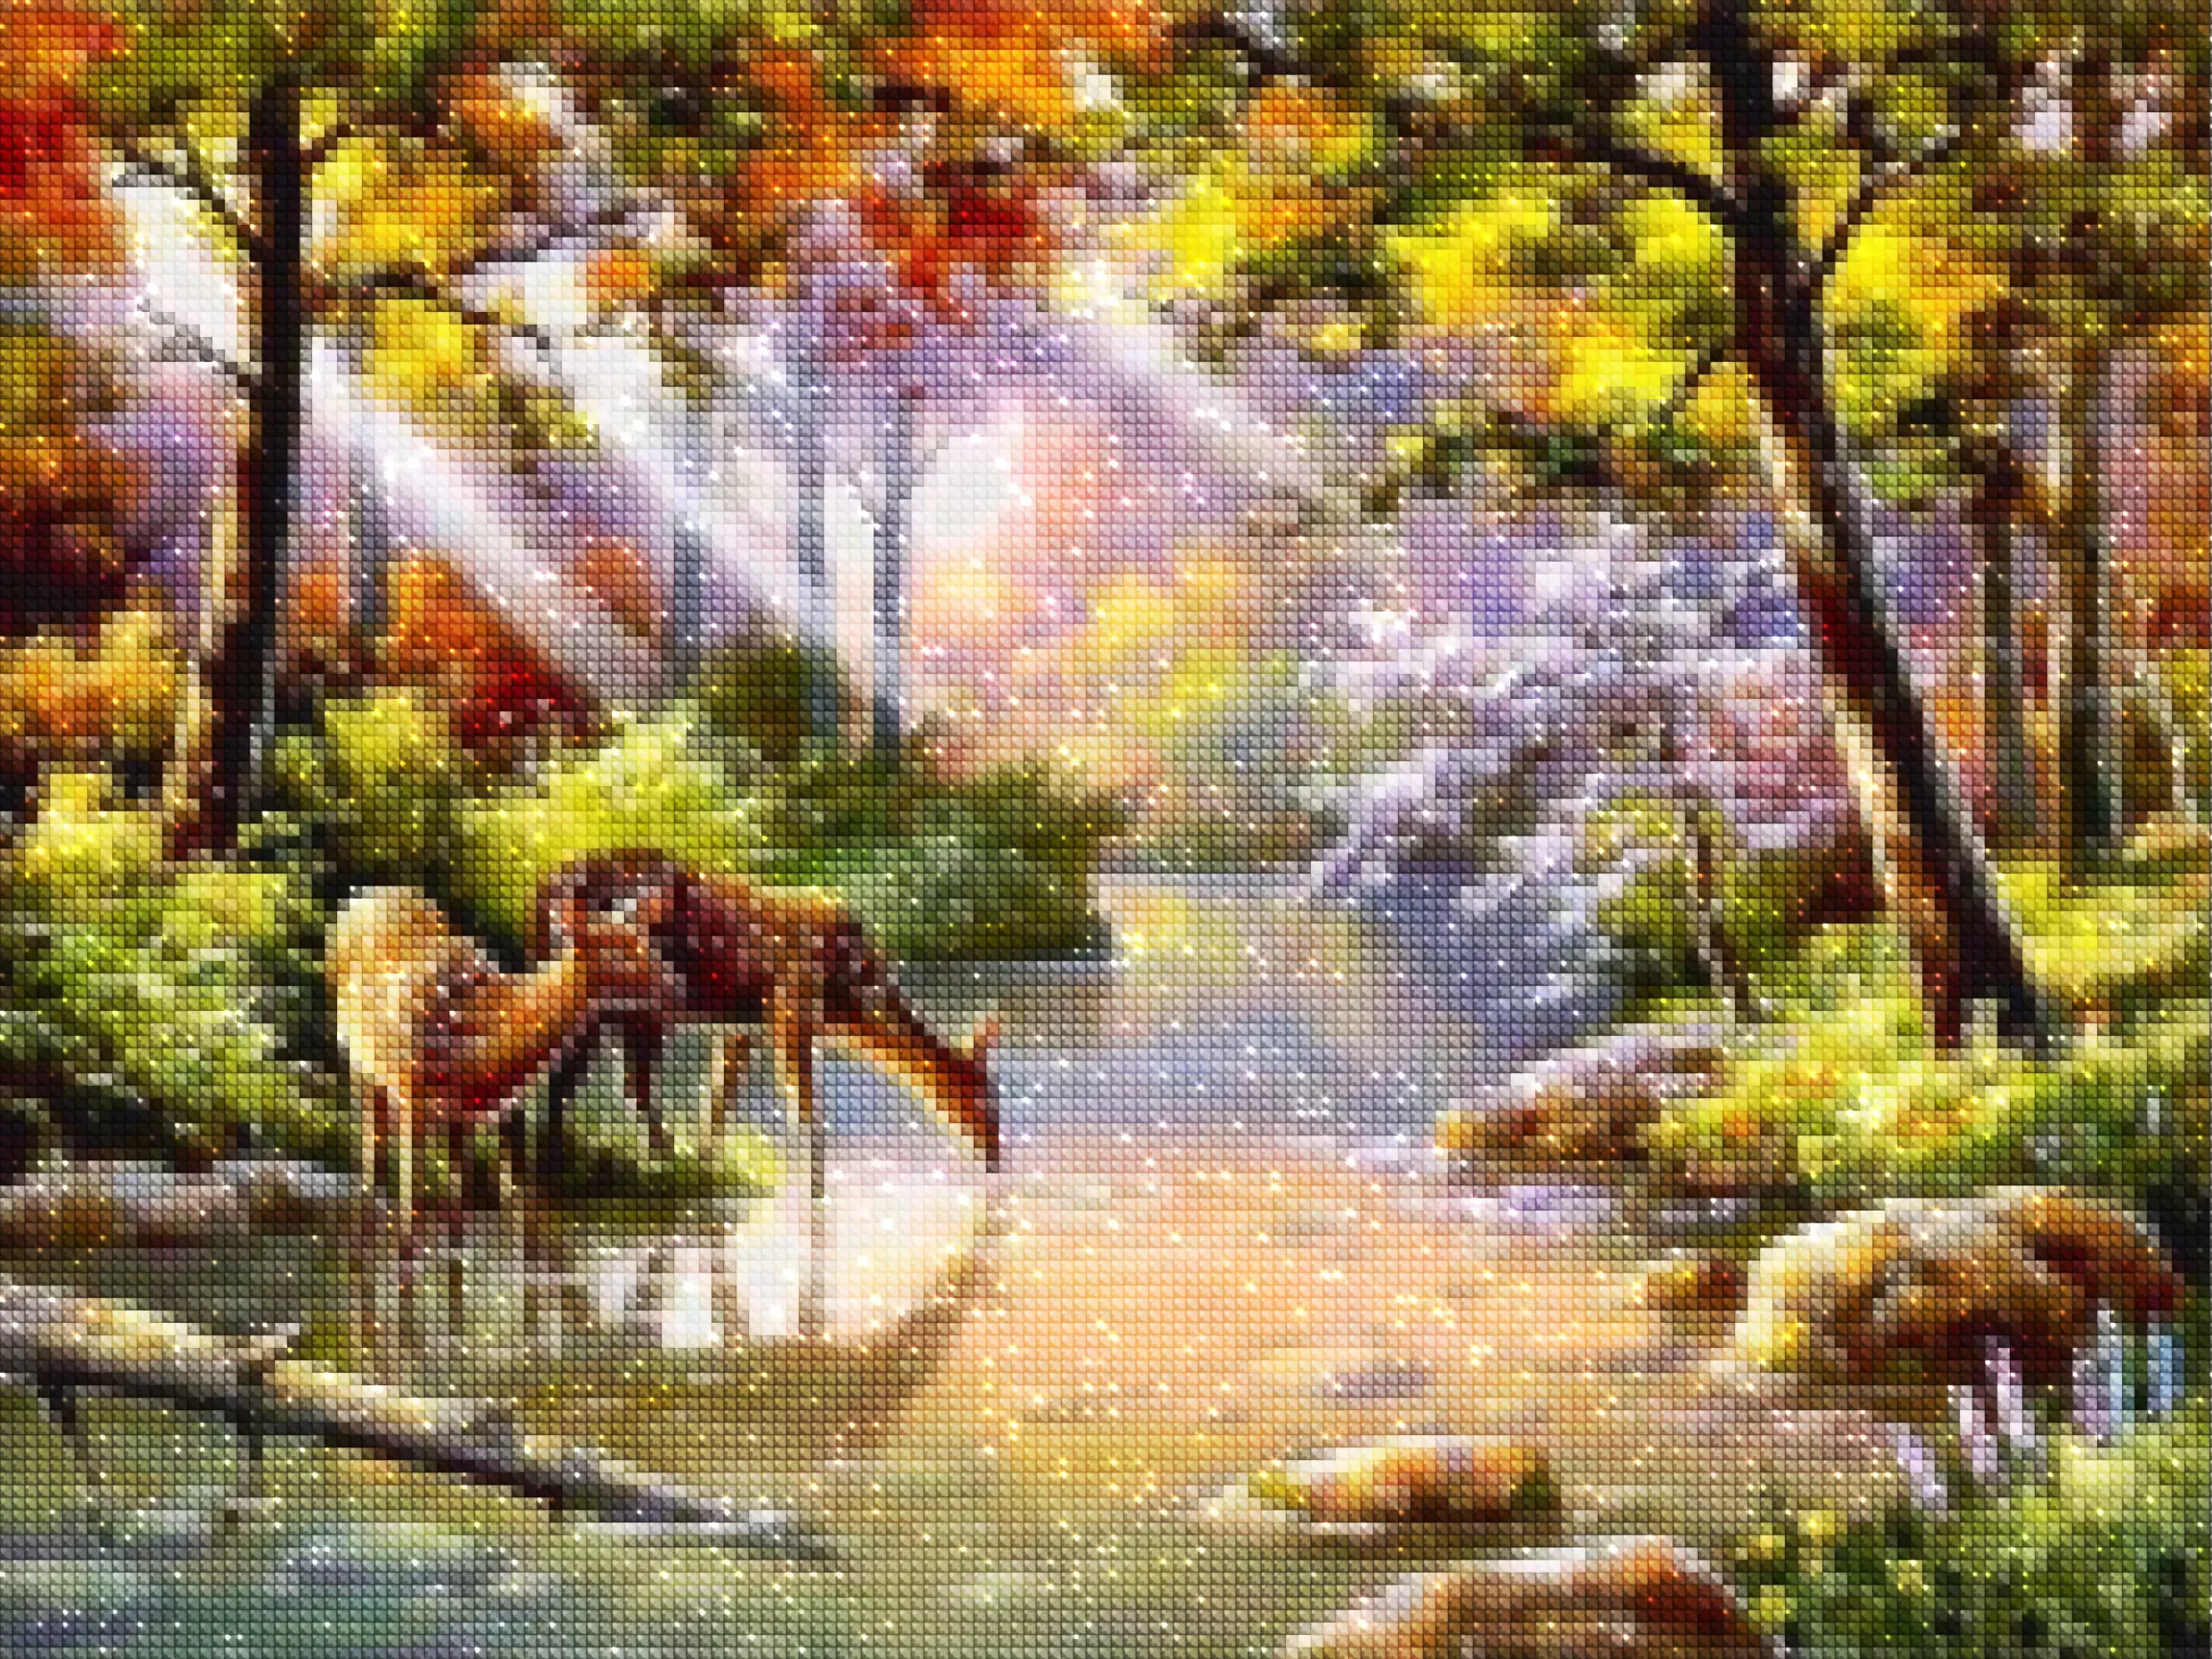 diamonds-wizard-diamond-painting-kit-Animals-Deer-Deer by the Stream-diamonds.webp